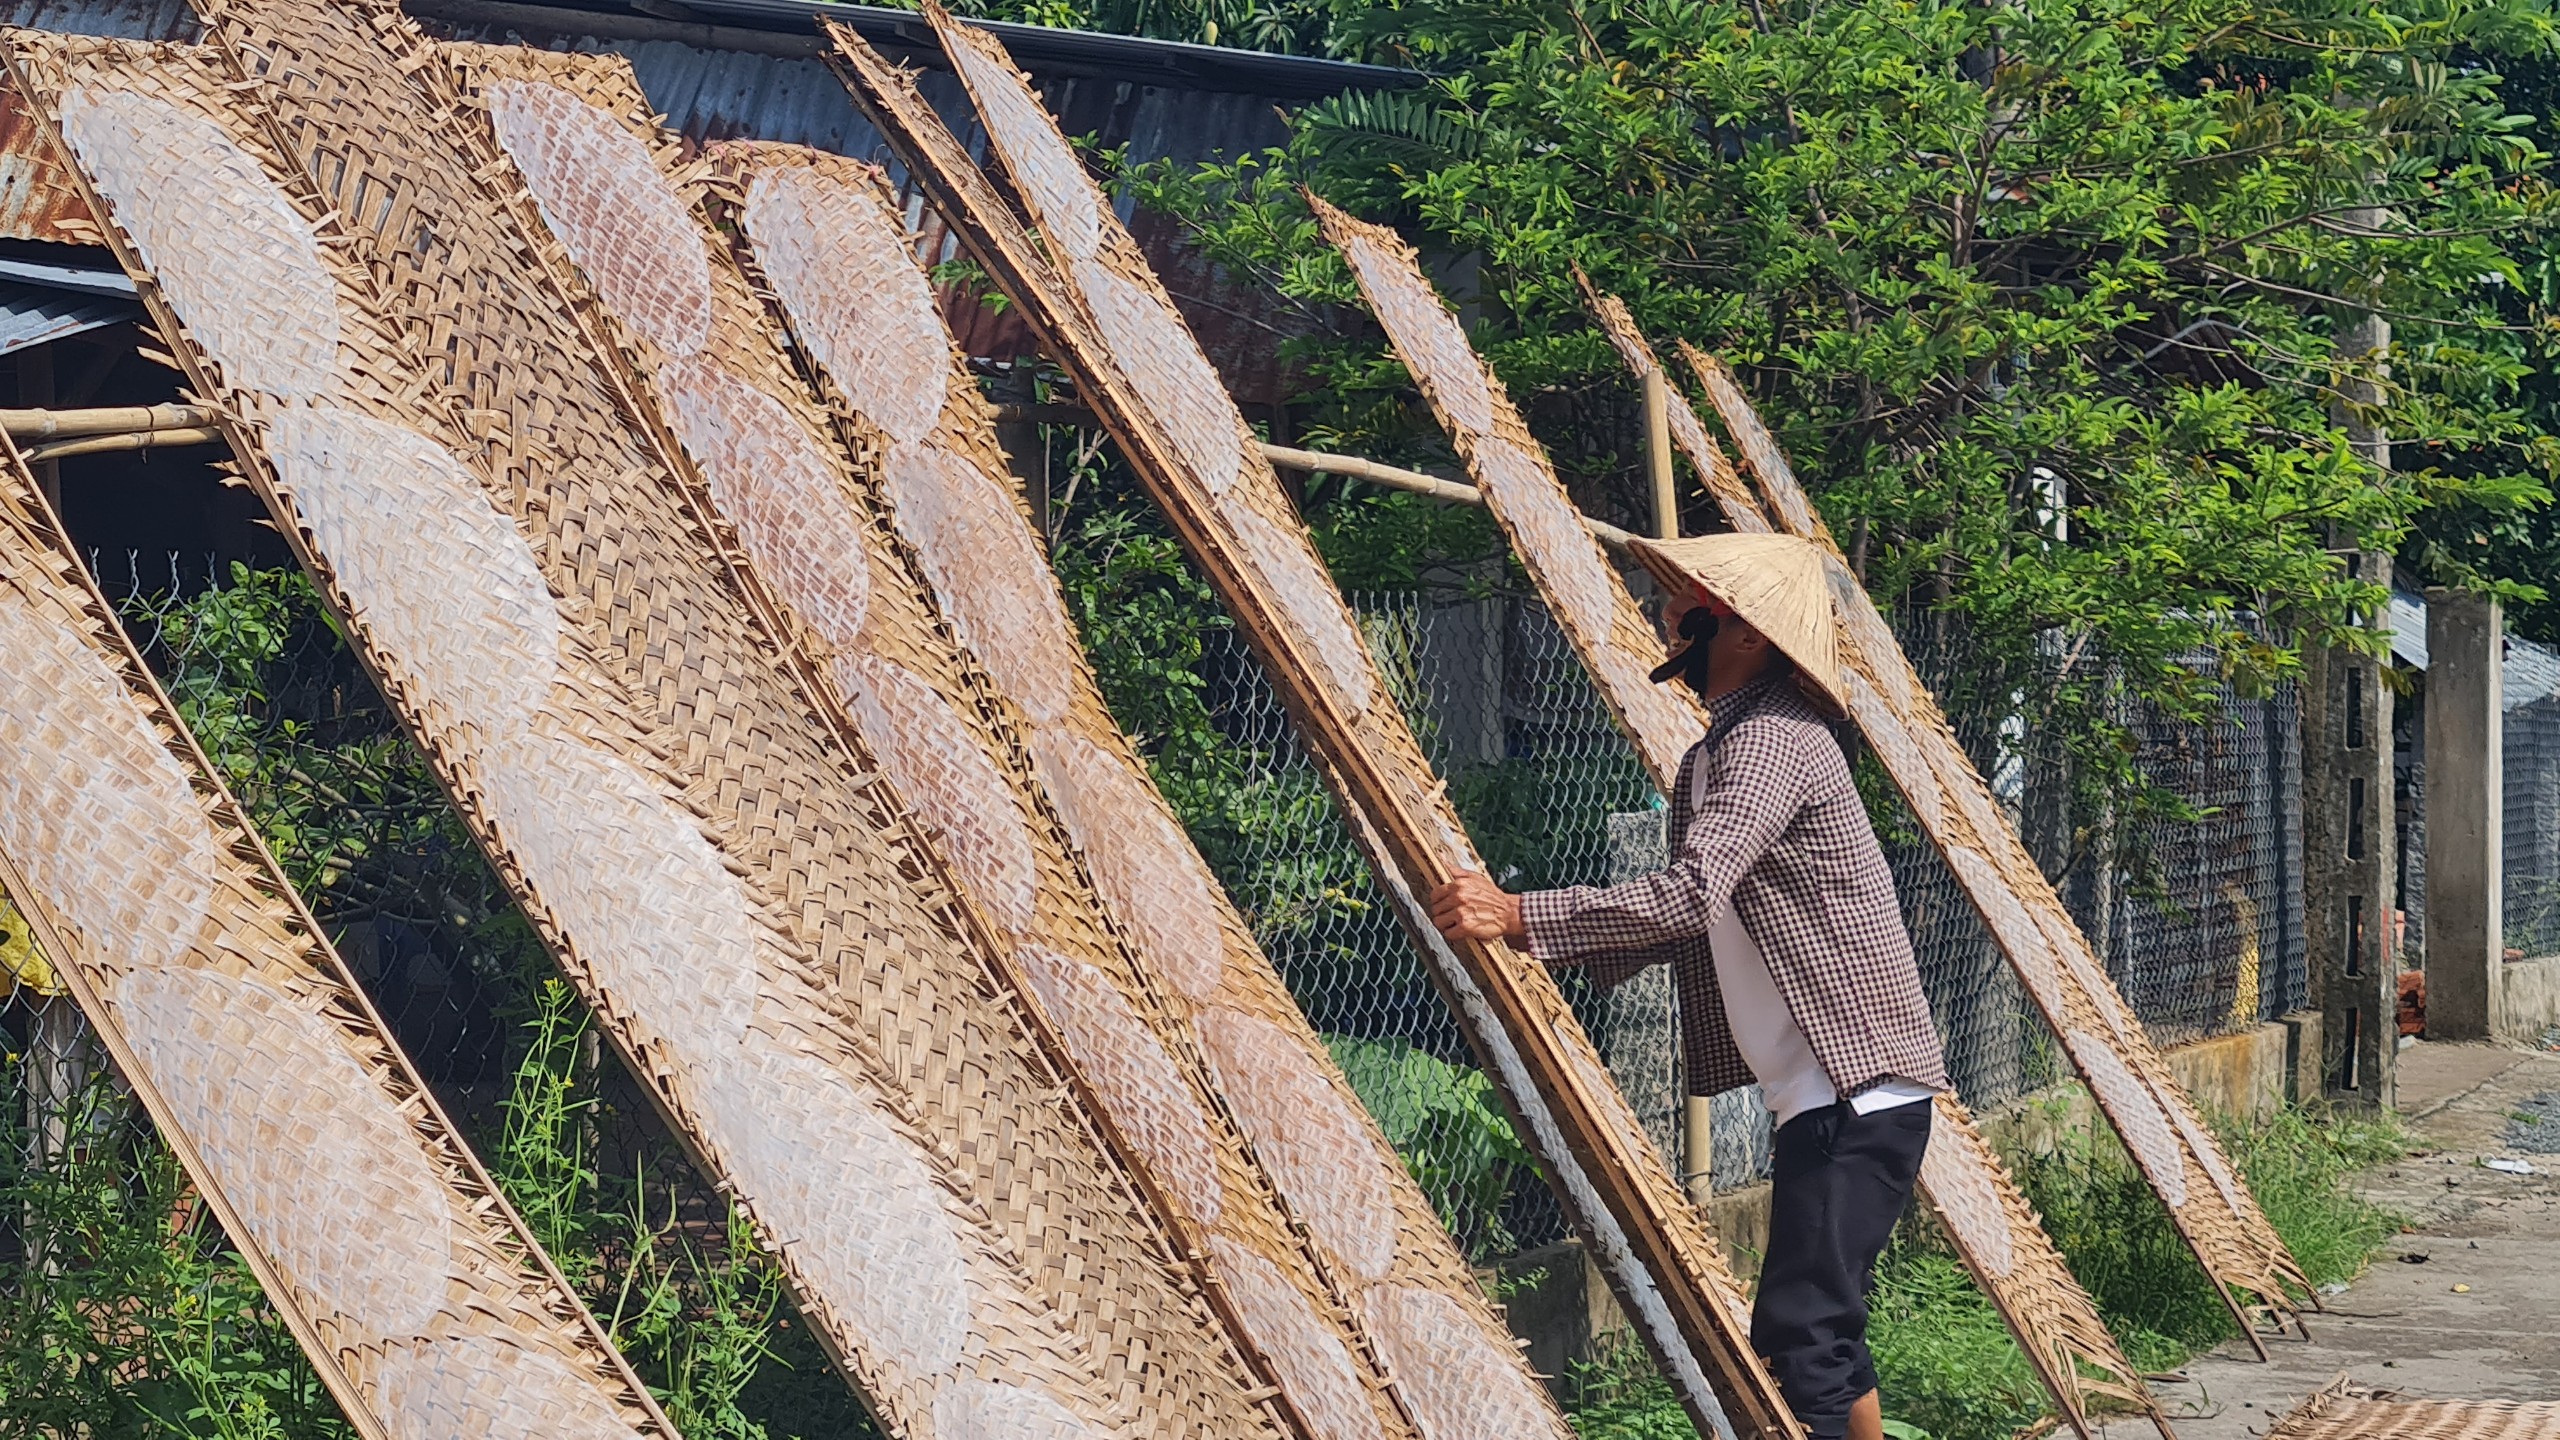 Làng bánh tráng Thuận Hưng (quận Thốt Nốt) có bề dày lịch sử hơn 200 năm tuổi và được công nhận là làng nghề truyền thống từ năm 1998.